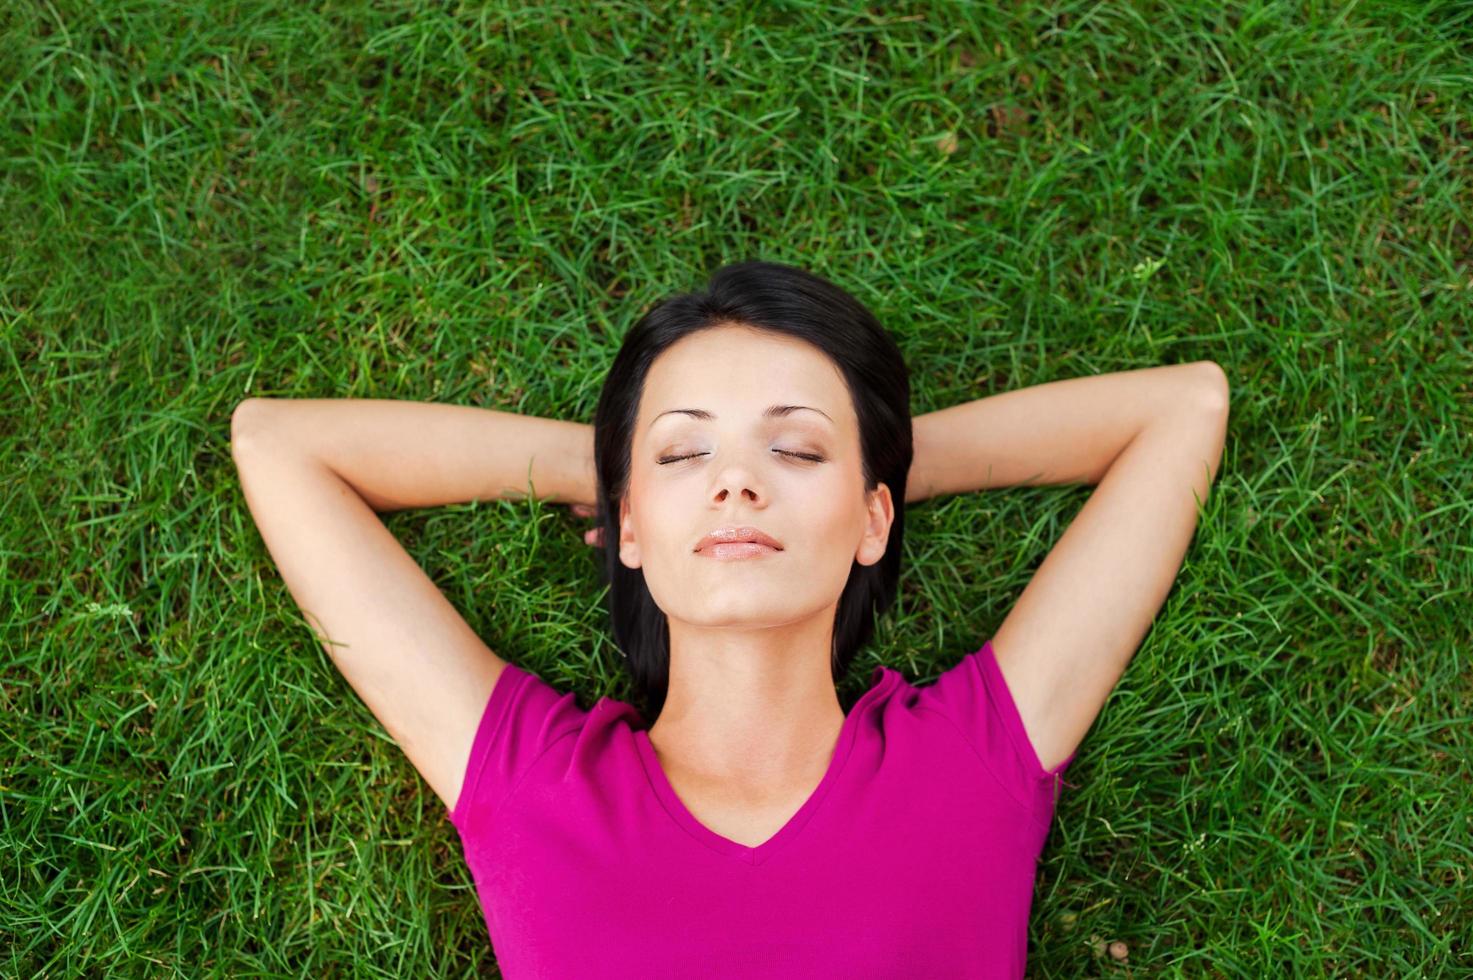 totale Entspannung. Draufsicht einer schönen jungen Frau, die schläft, während sie die Hände hinter dem Kopf hält und auf dem grünen Gras liegt foto